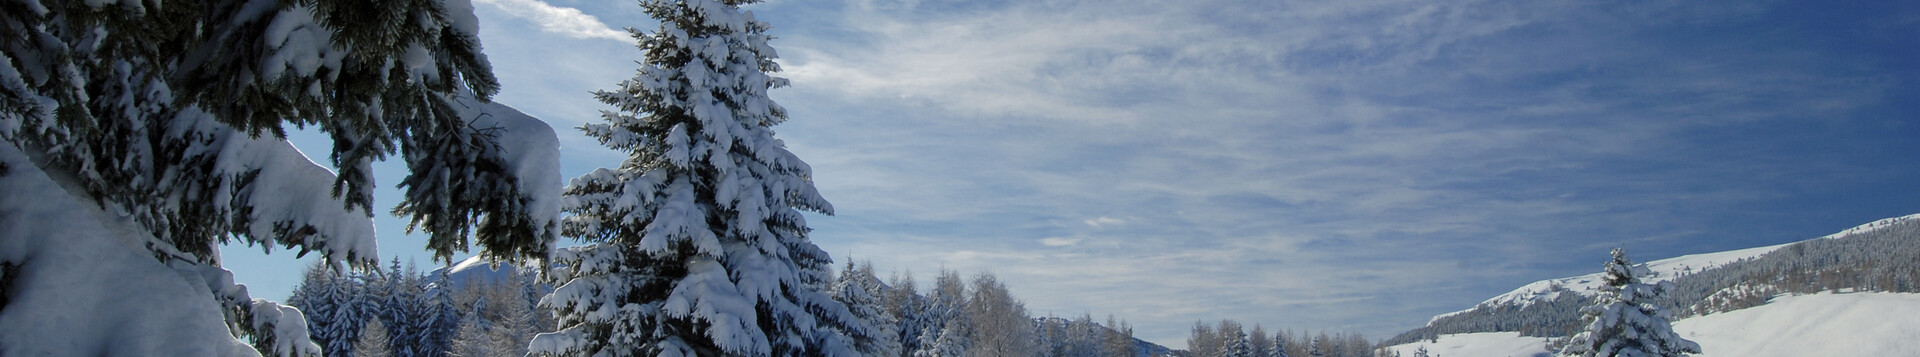 Neve facile vicino a Trento | © 22453-monte-bondone-inverno-giovanni-cavulli